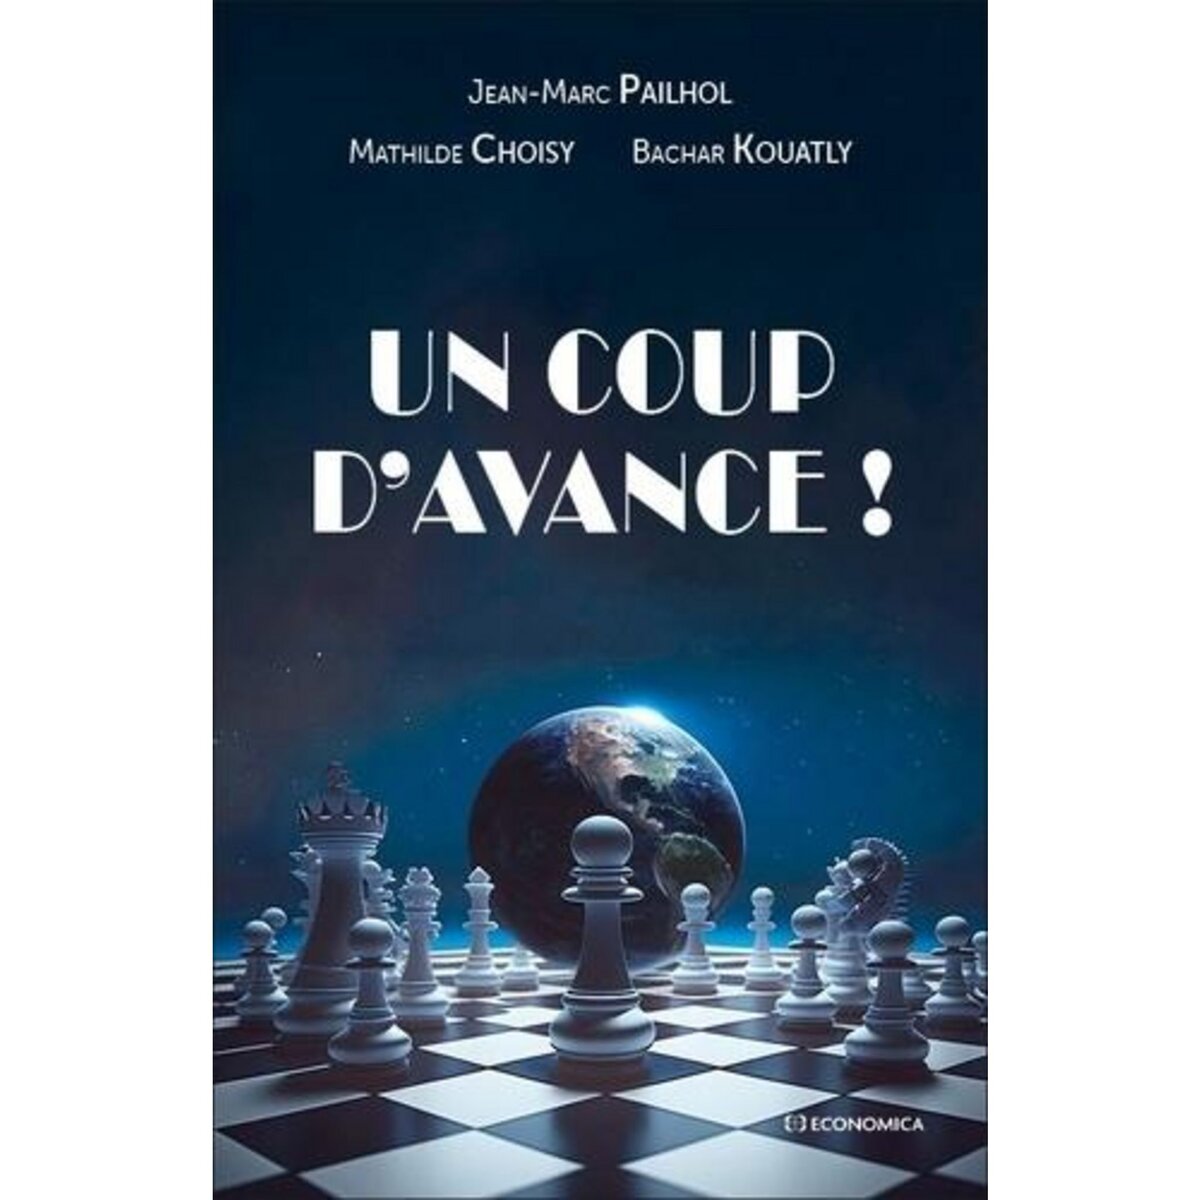  UN COUP D'AVANCE !, Pailhol Jean-marc